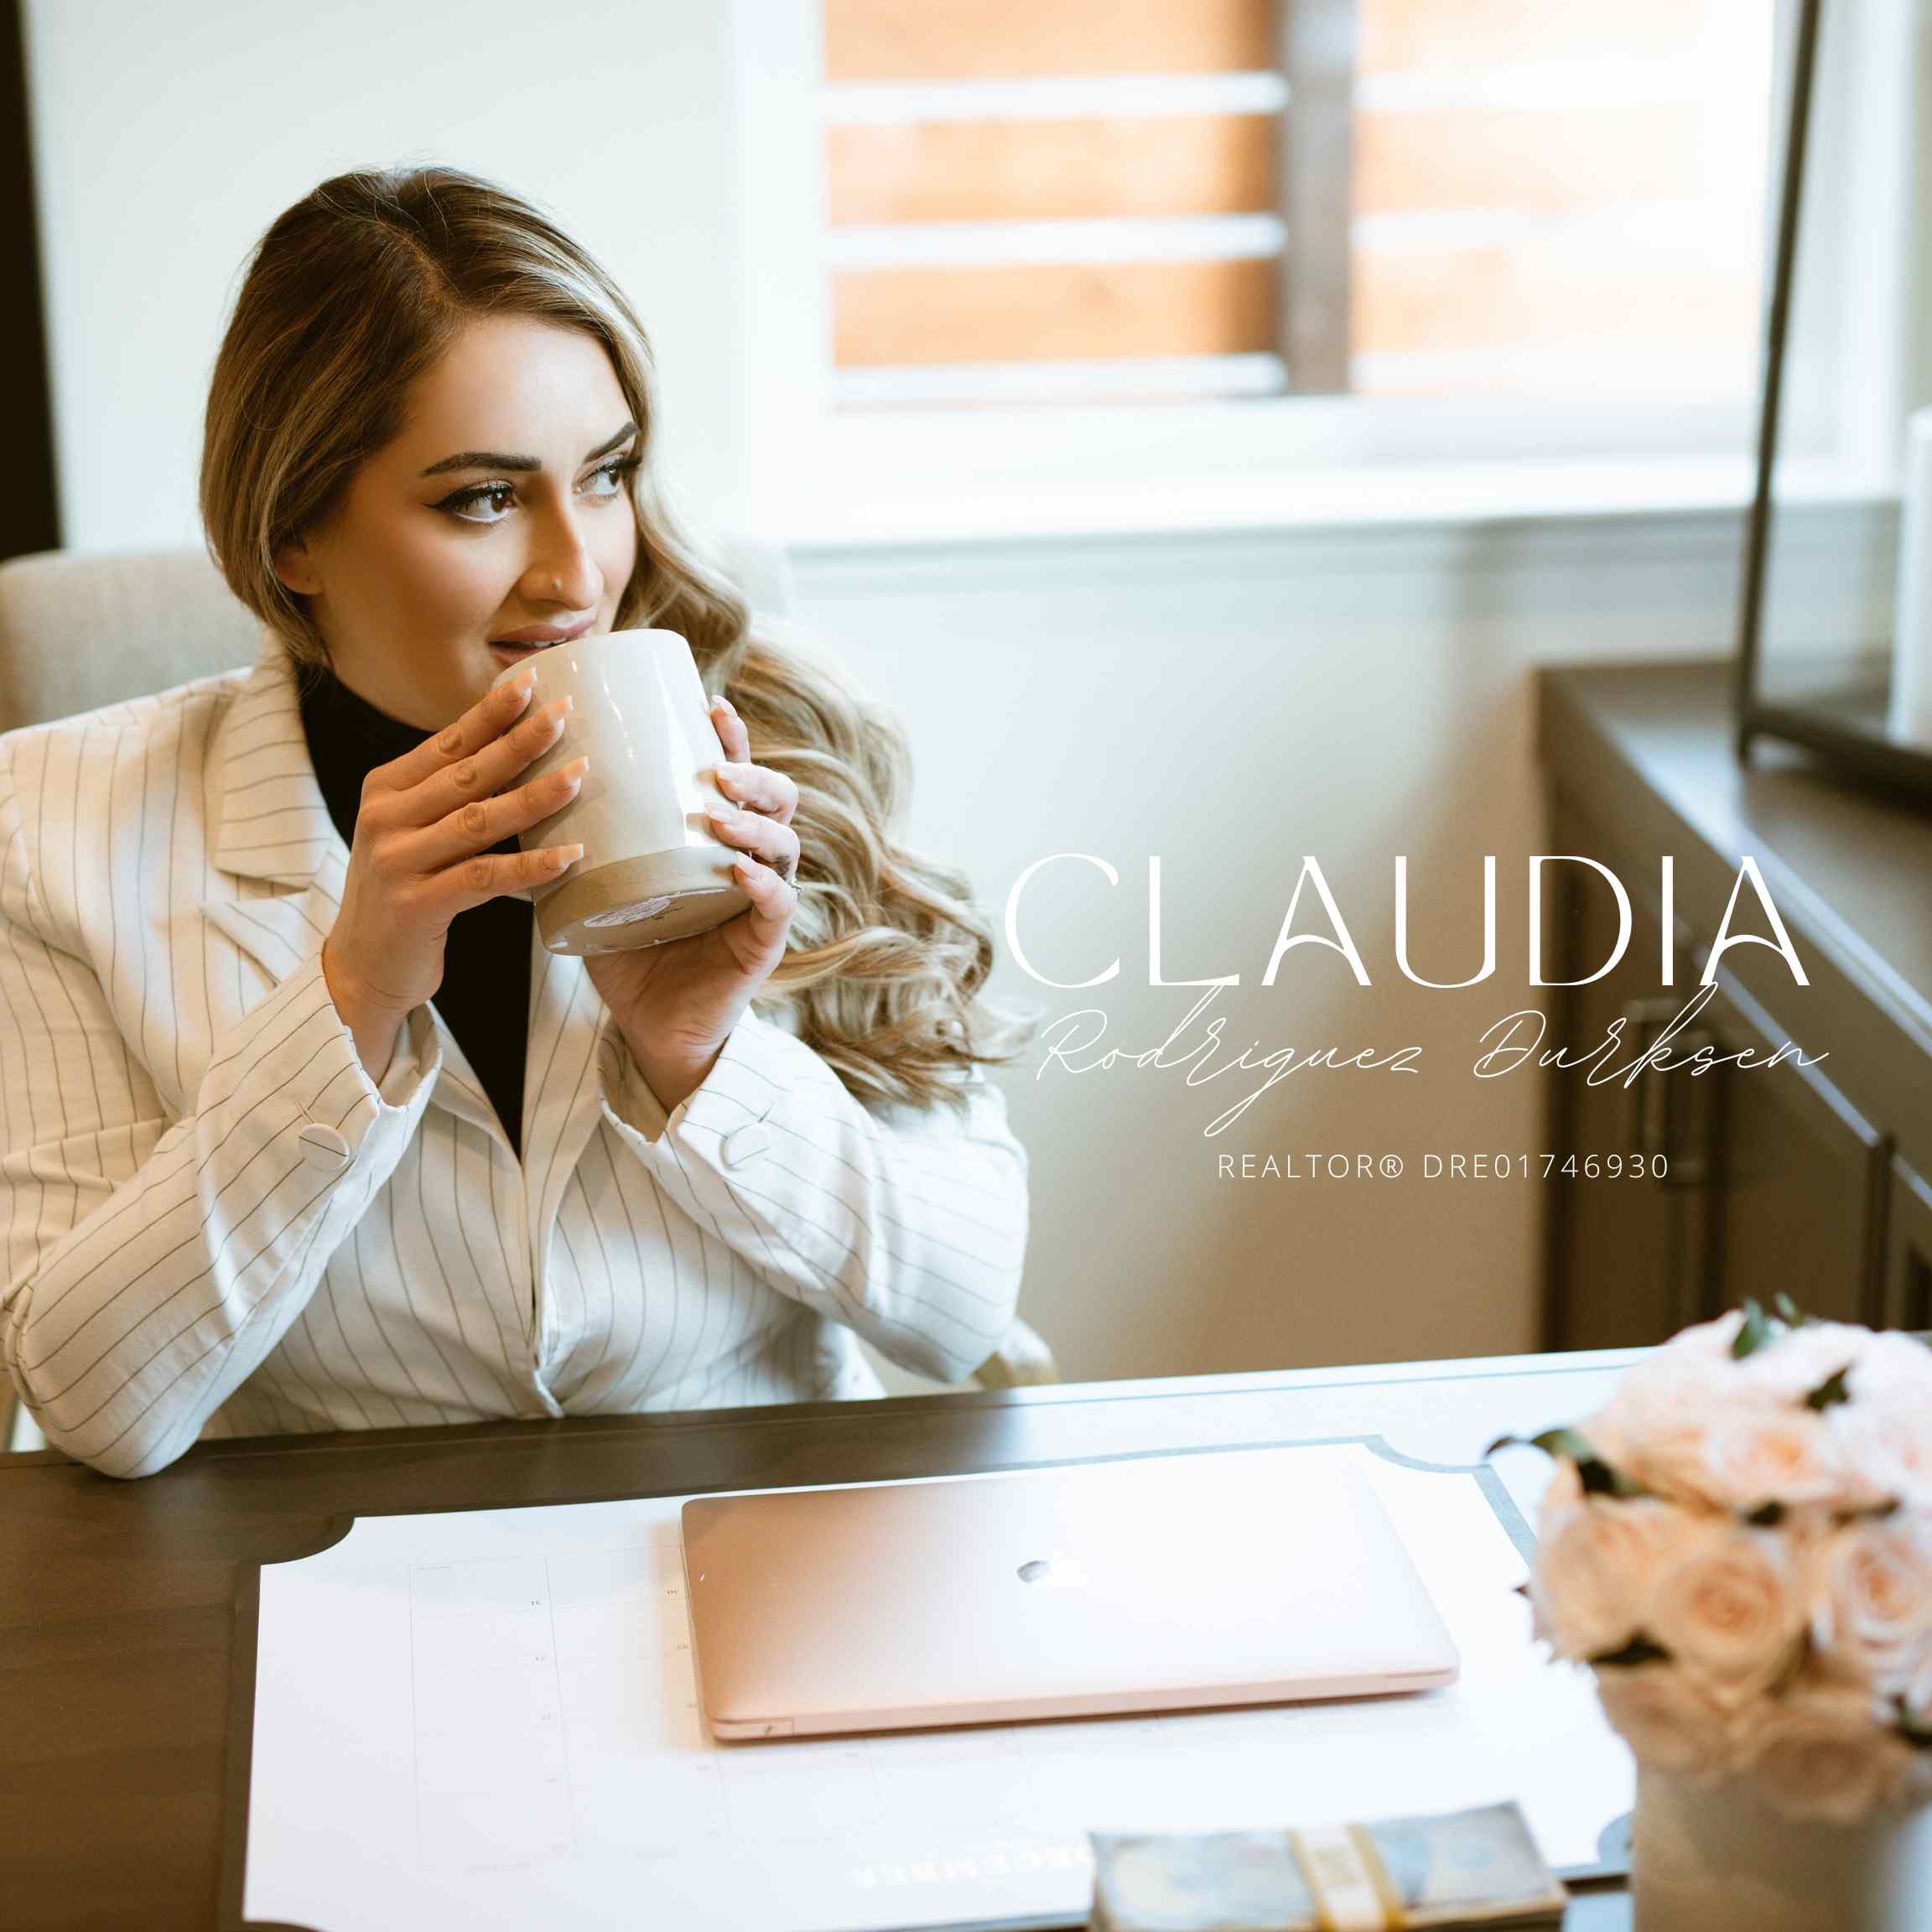 Claudia Durksen Custom Image